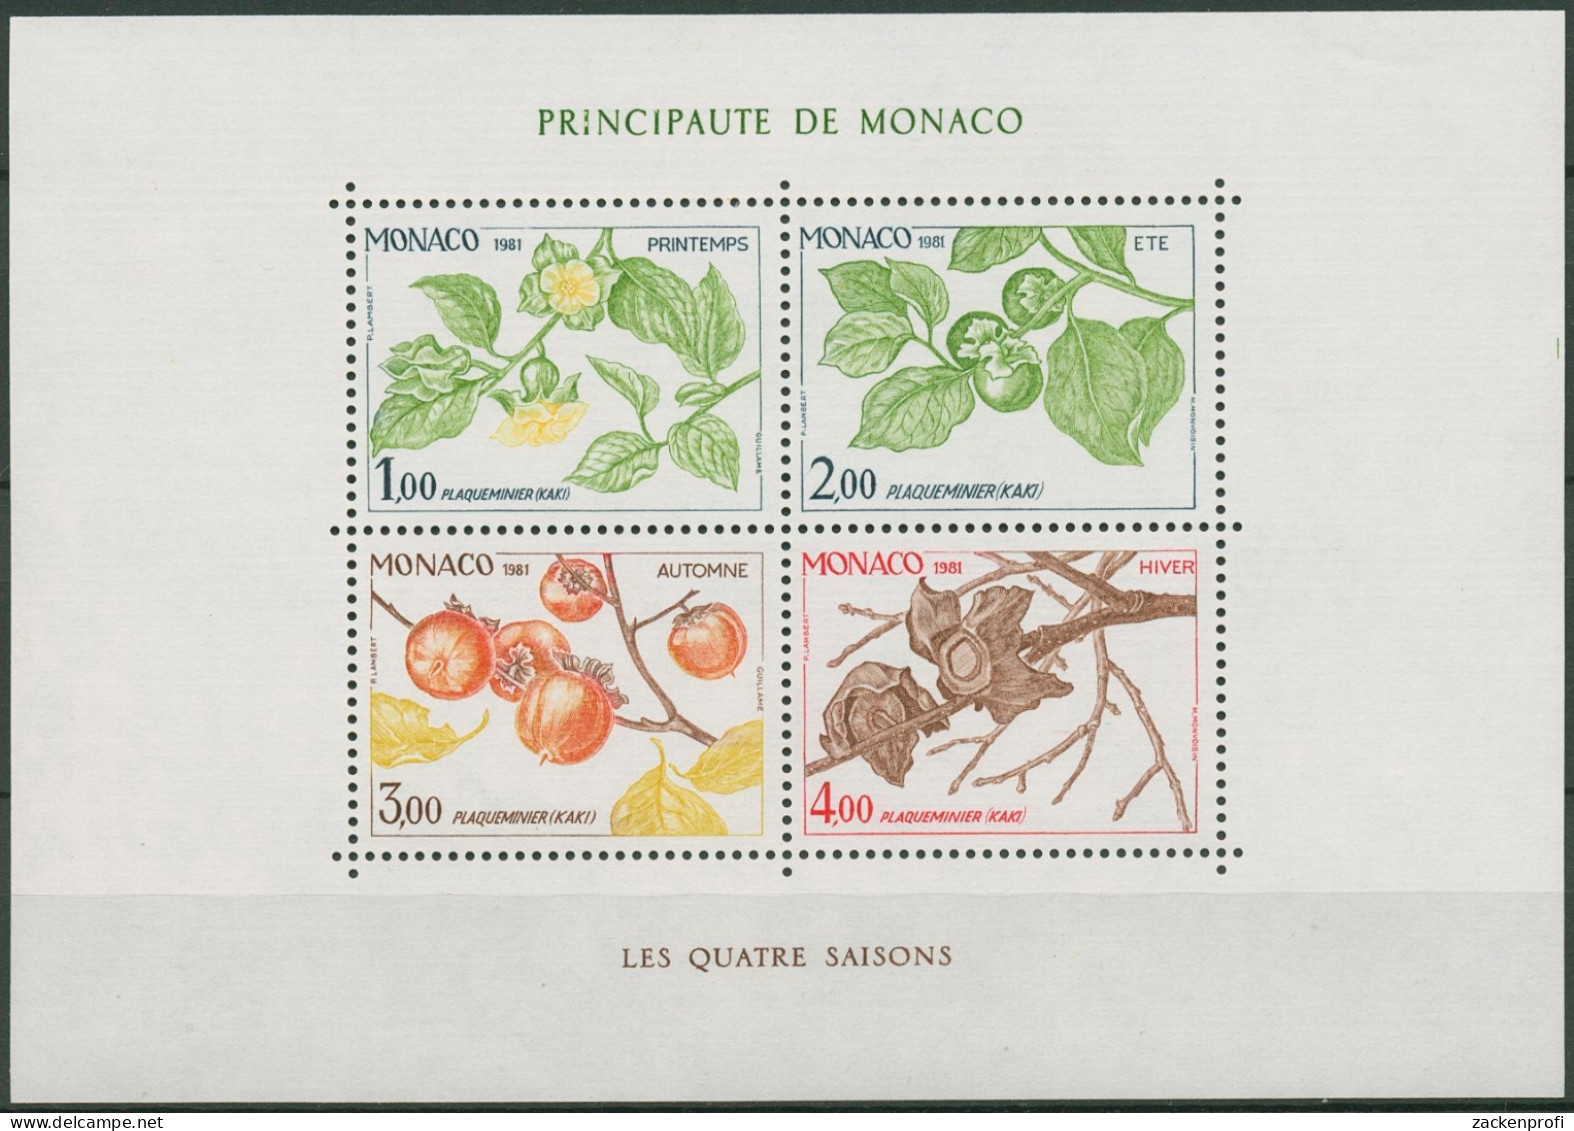 Monaco 1981 Vier Jahreszeiten Kakipflaume Block 18 Postfrisch (C91401) - Blocks & Sheetlets